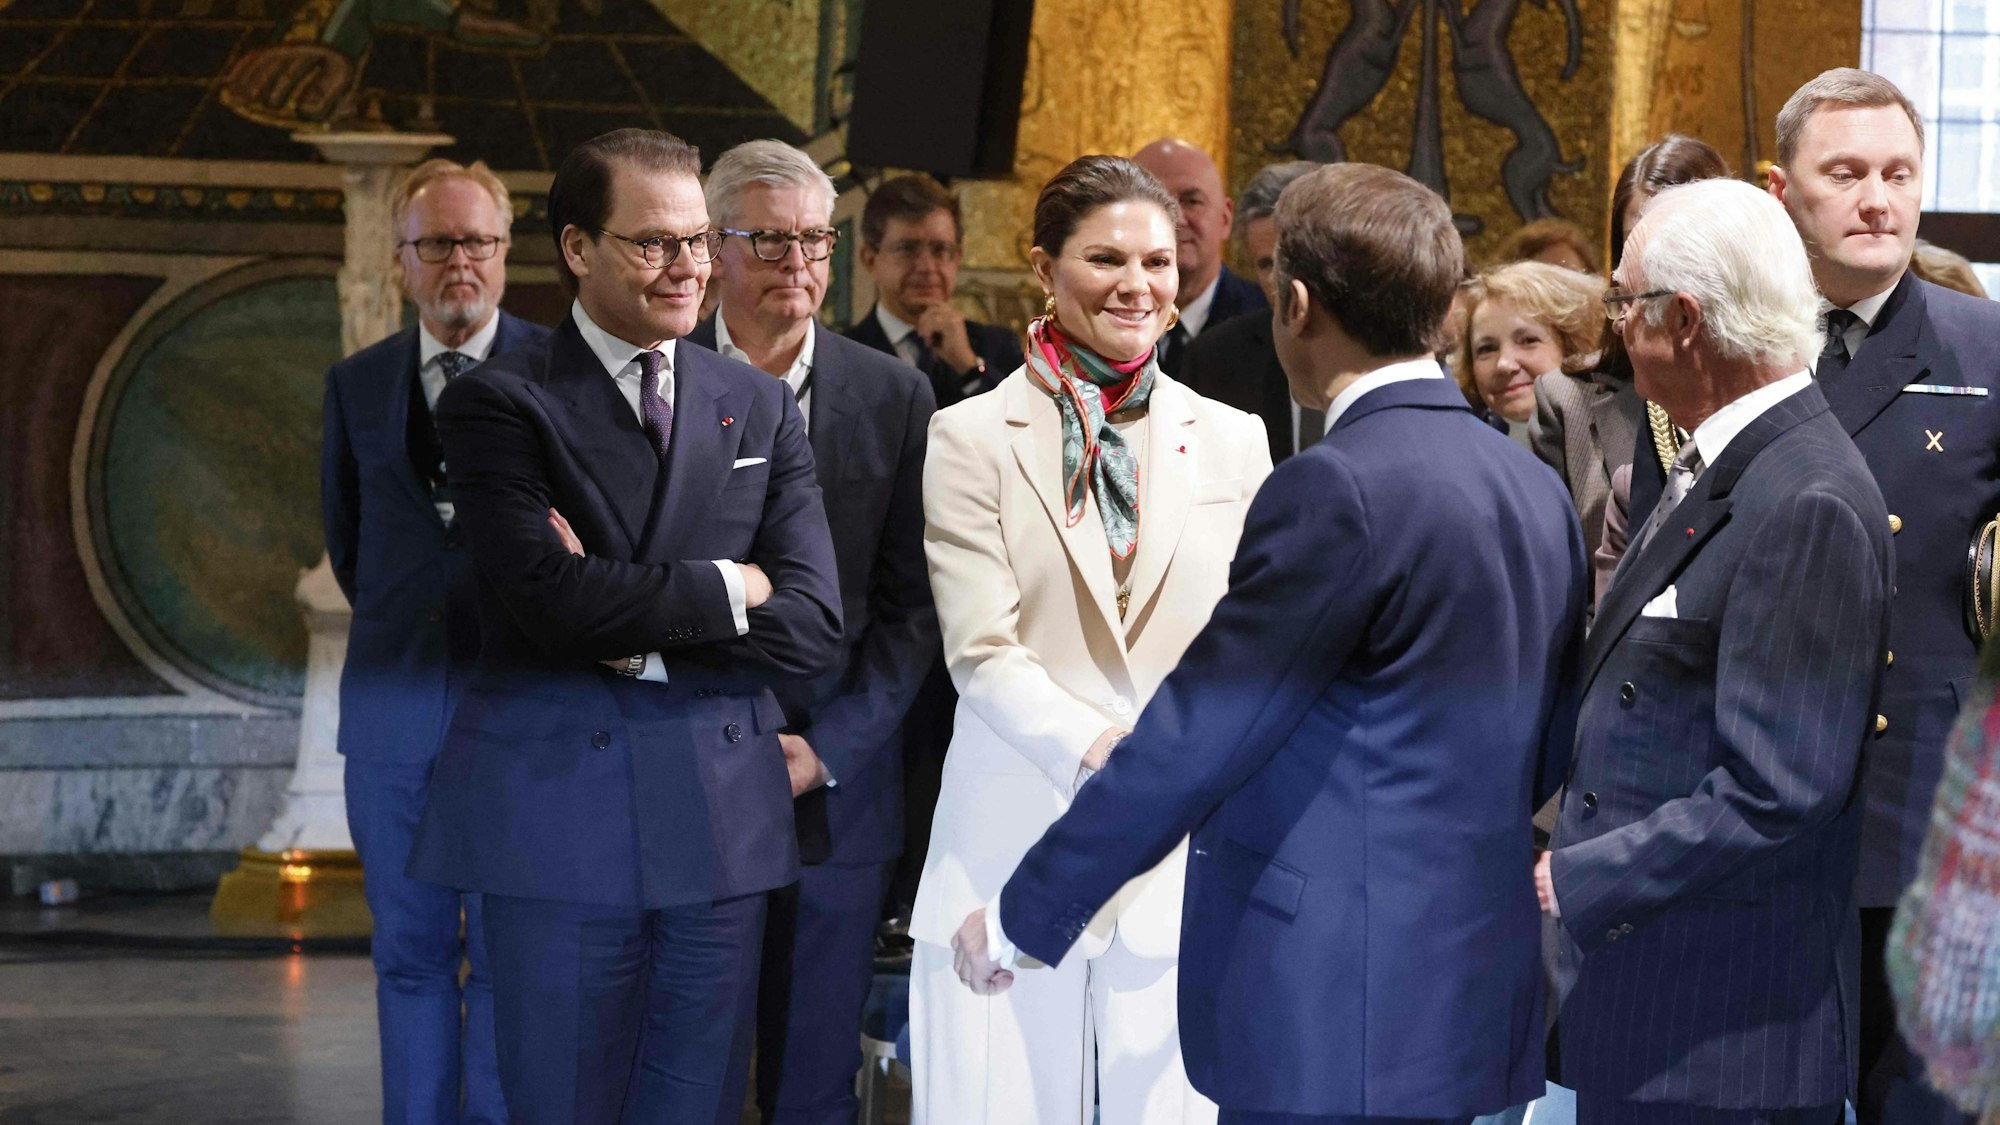 Prinz Daniel und Kronprinzessin Victoria begrüßen den französischen Präsidenten Emmanuel Macron und den schwedischen König Carl XVI Gustaf beim französisch-schwedischen Wirtschaftsforum.